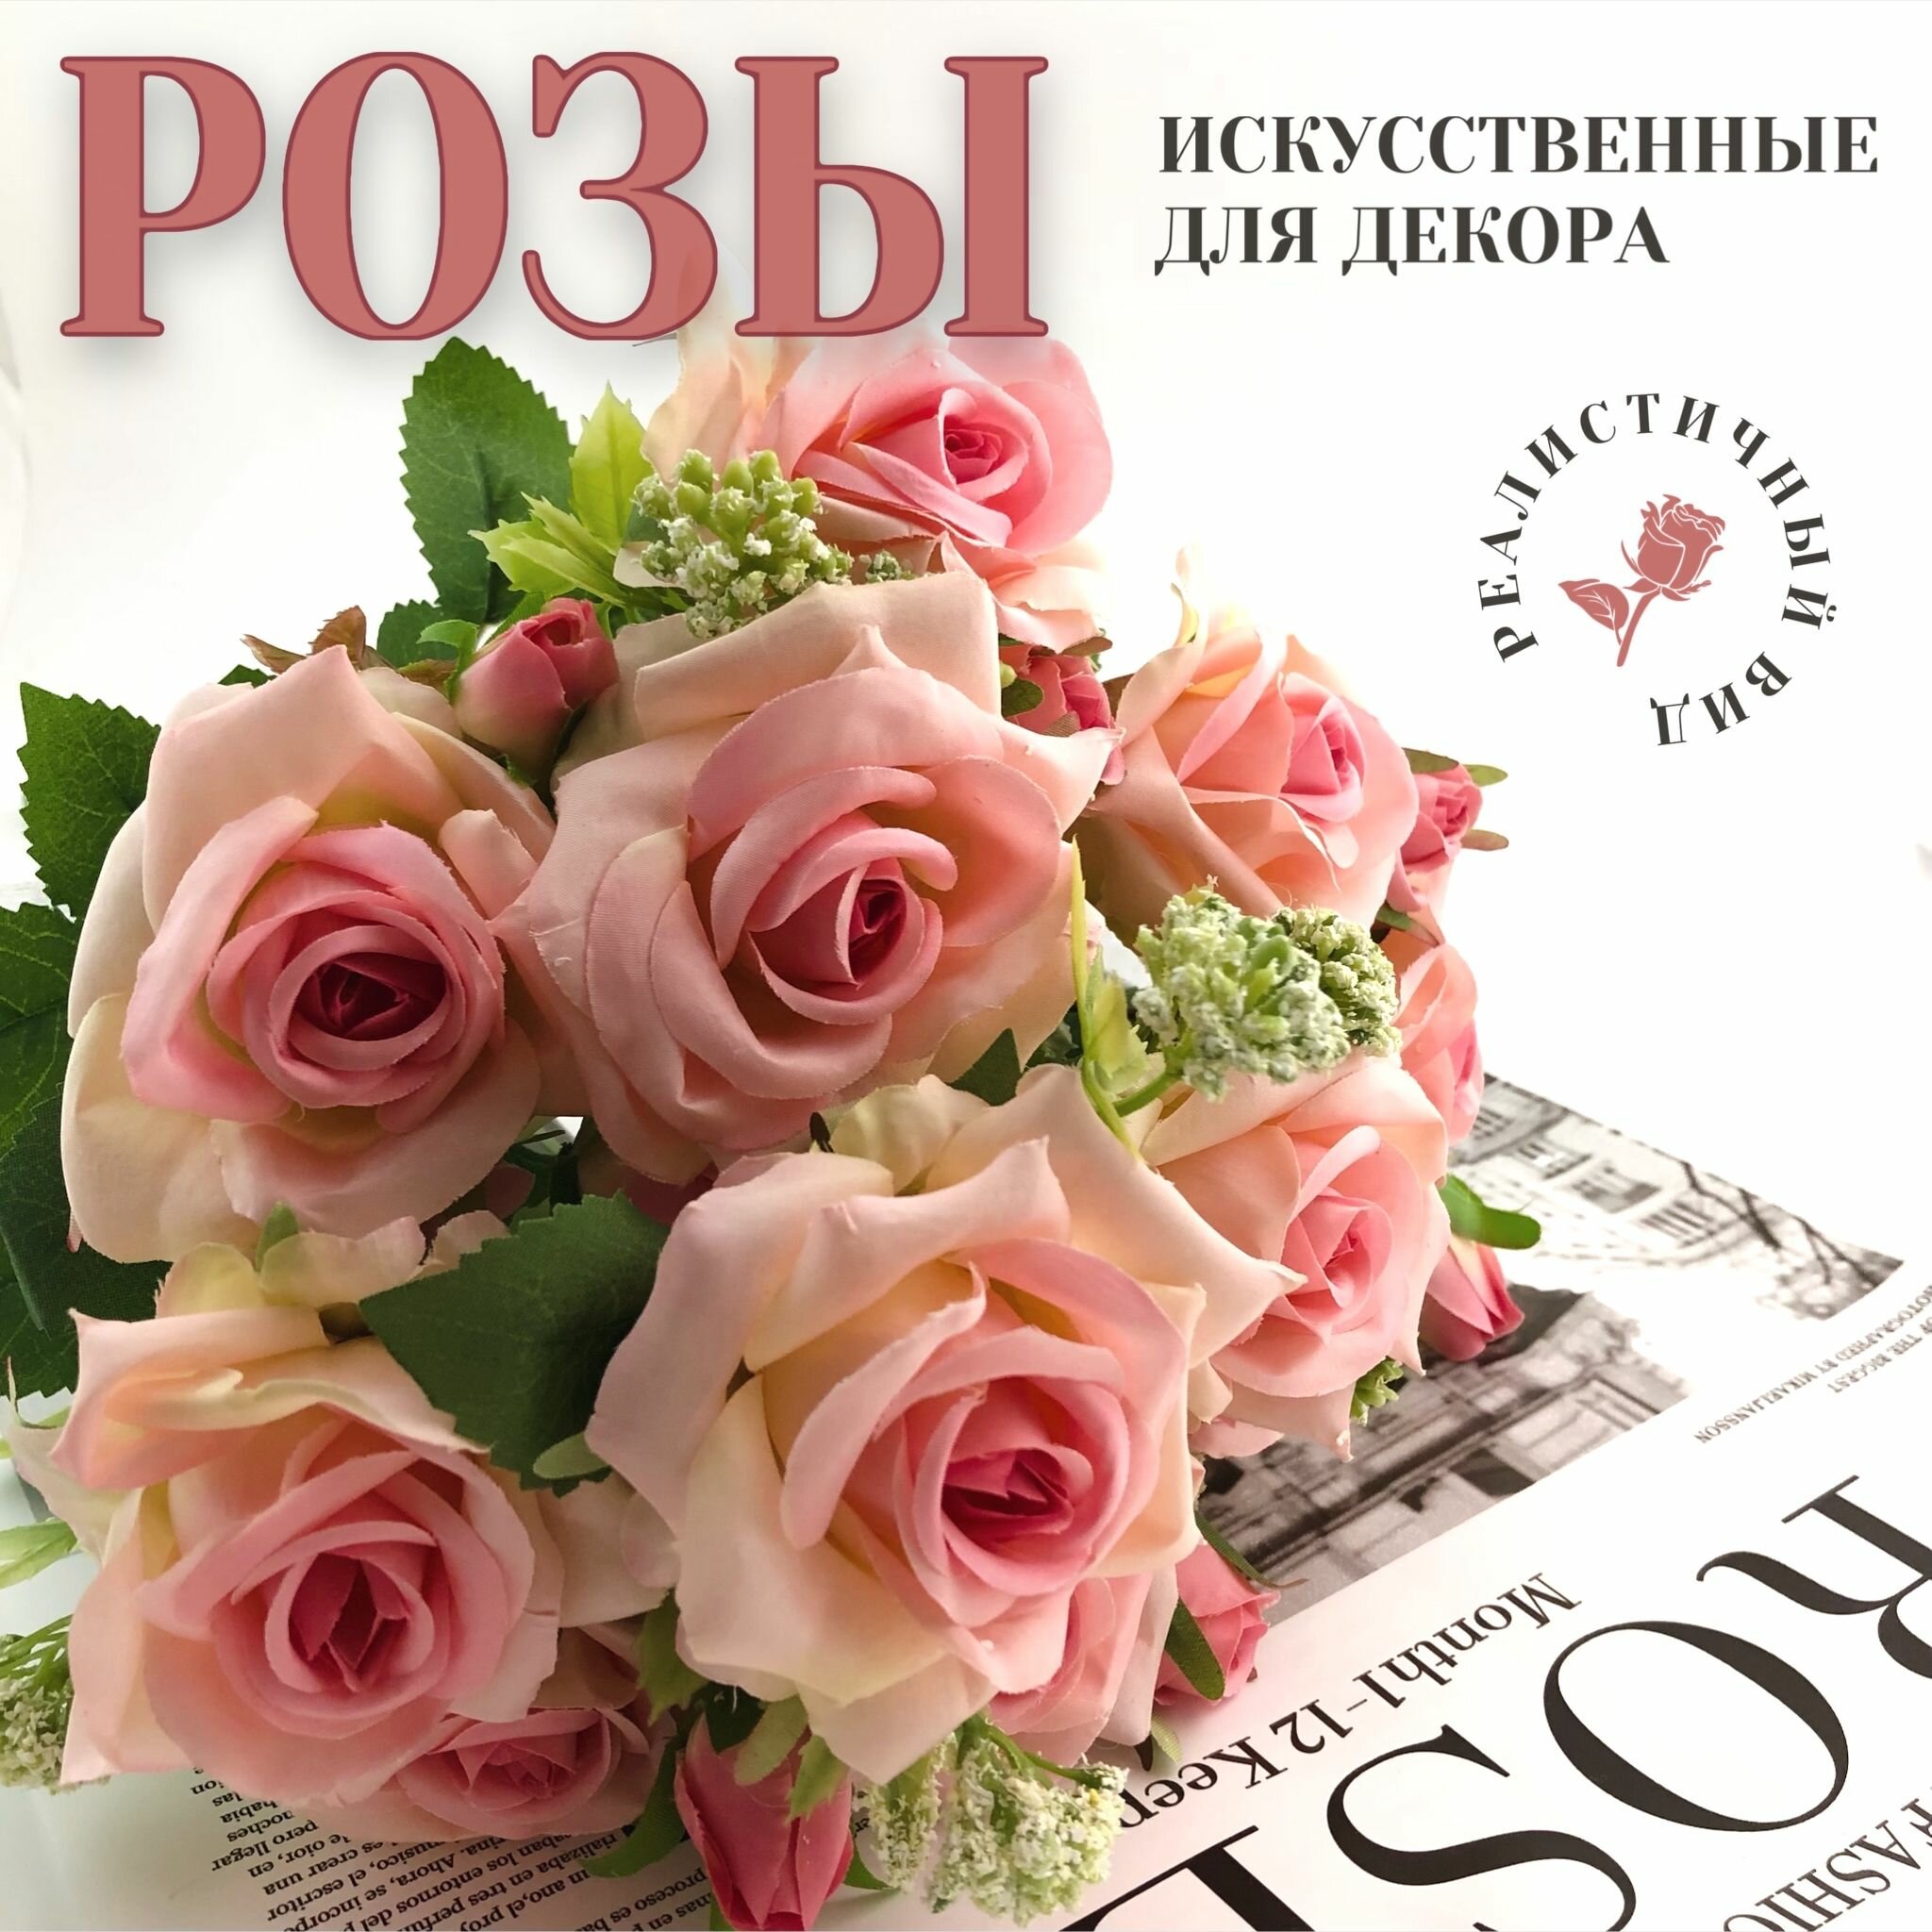 Искусственные цветы для декора "Розы" (букет 11 веток)